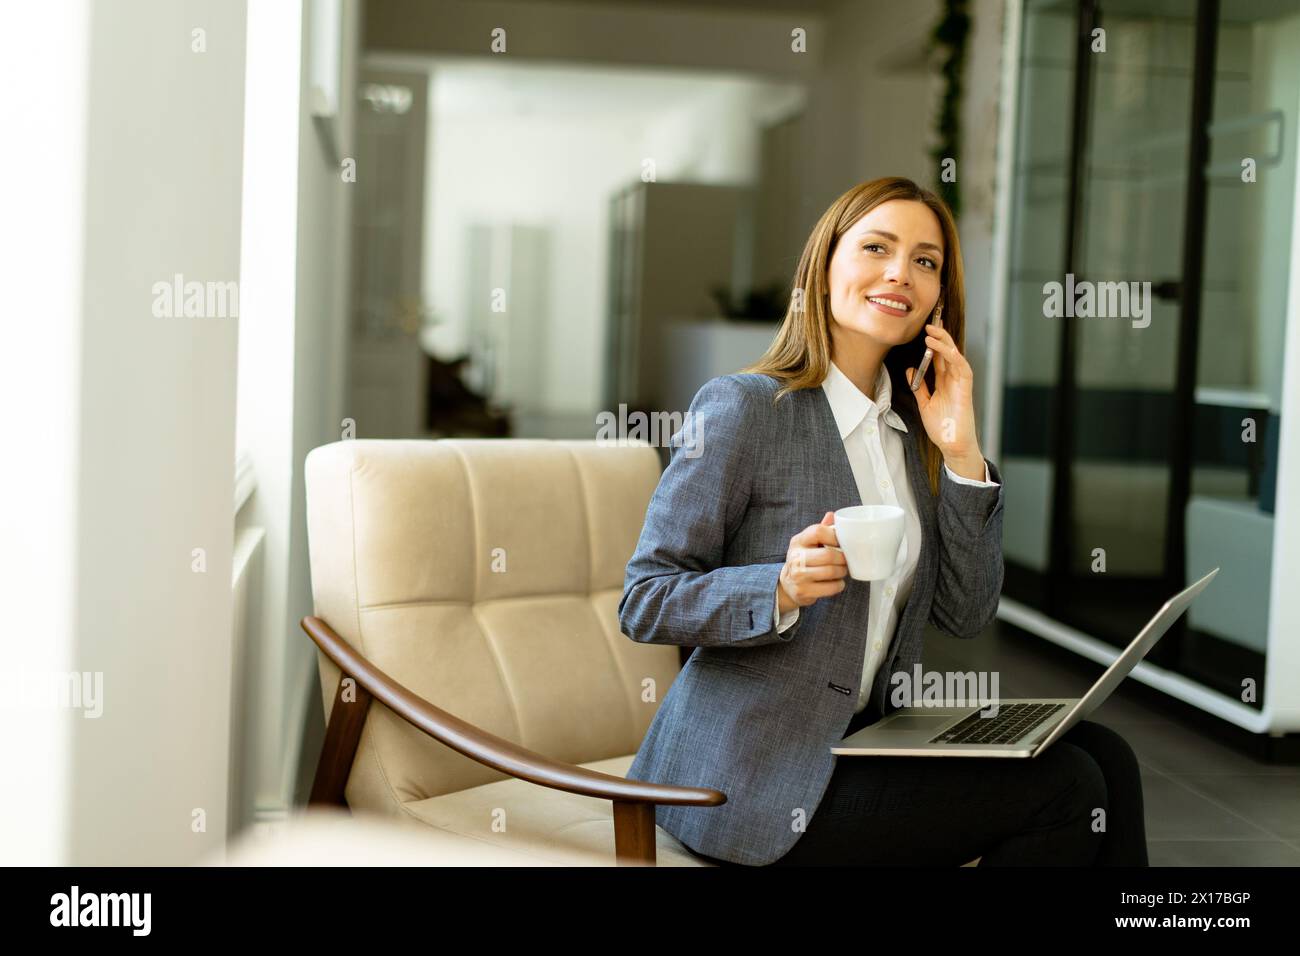 Eine Frau in Geschäftskleidung schlürft ihren Kaffee, während sie am Telefon spricht. Ihr Laptop ist bereit für die täglichen Aufgaben. Stockfoto